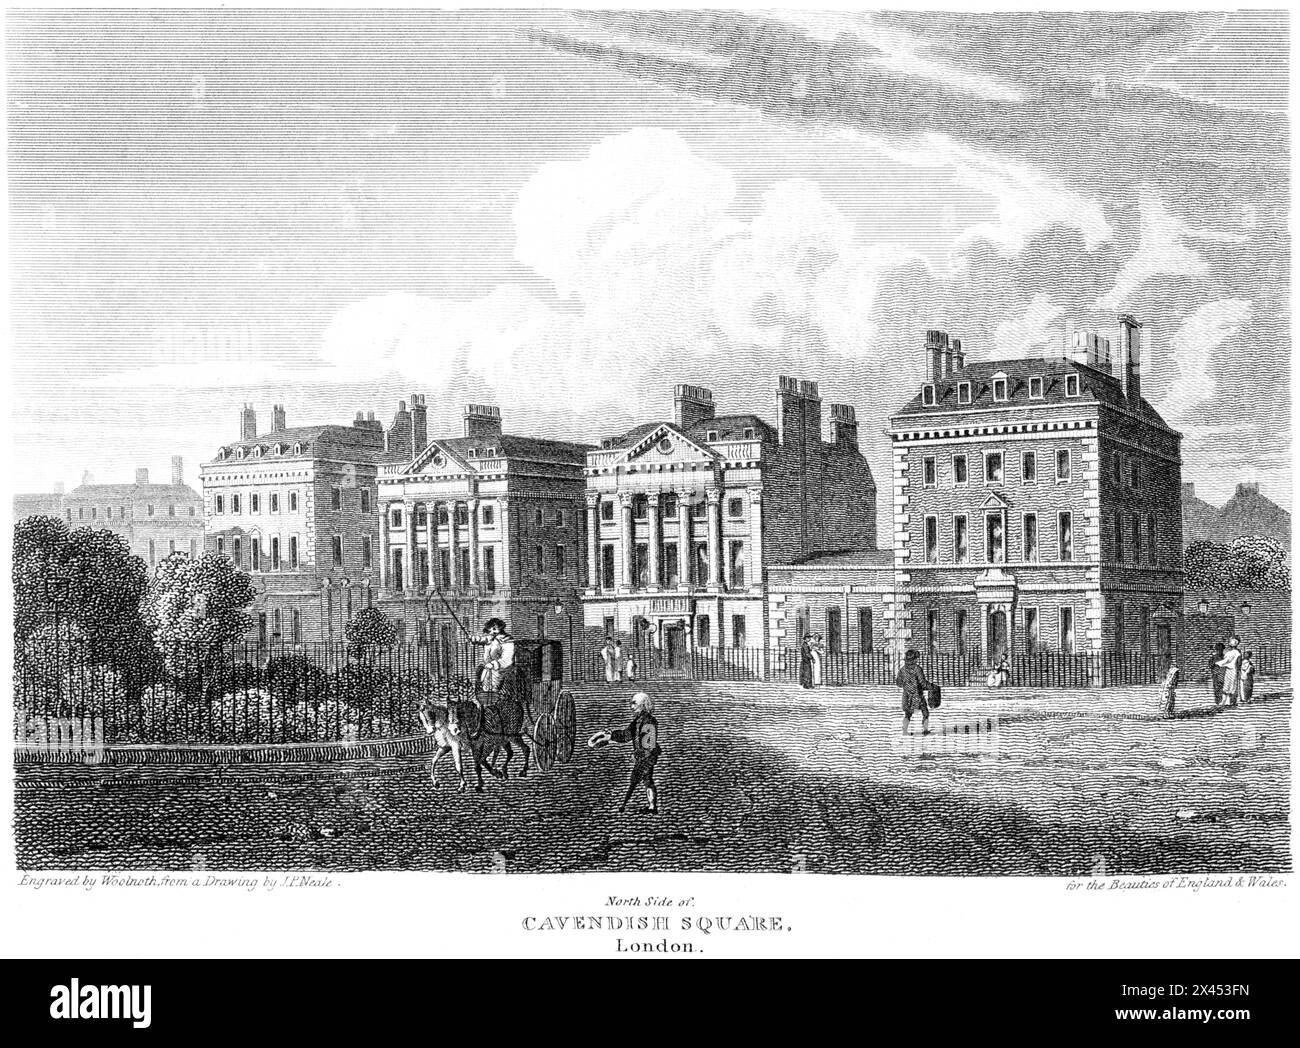 Eine Gravur mit dem Titel North Side of Cavendish Square, London UK, die in hoher Auflösung aus einem Buch gescannt wurde, das um 1815 erschien. Urheberrechtlich geschützt Stockfoto